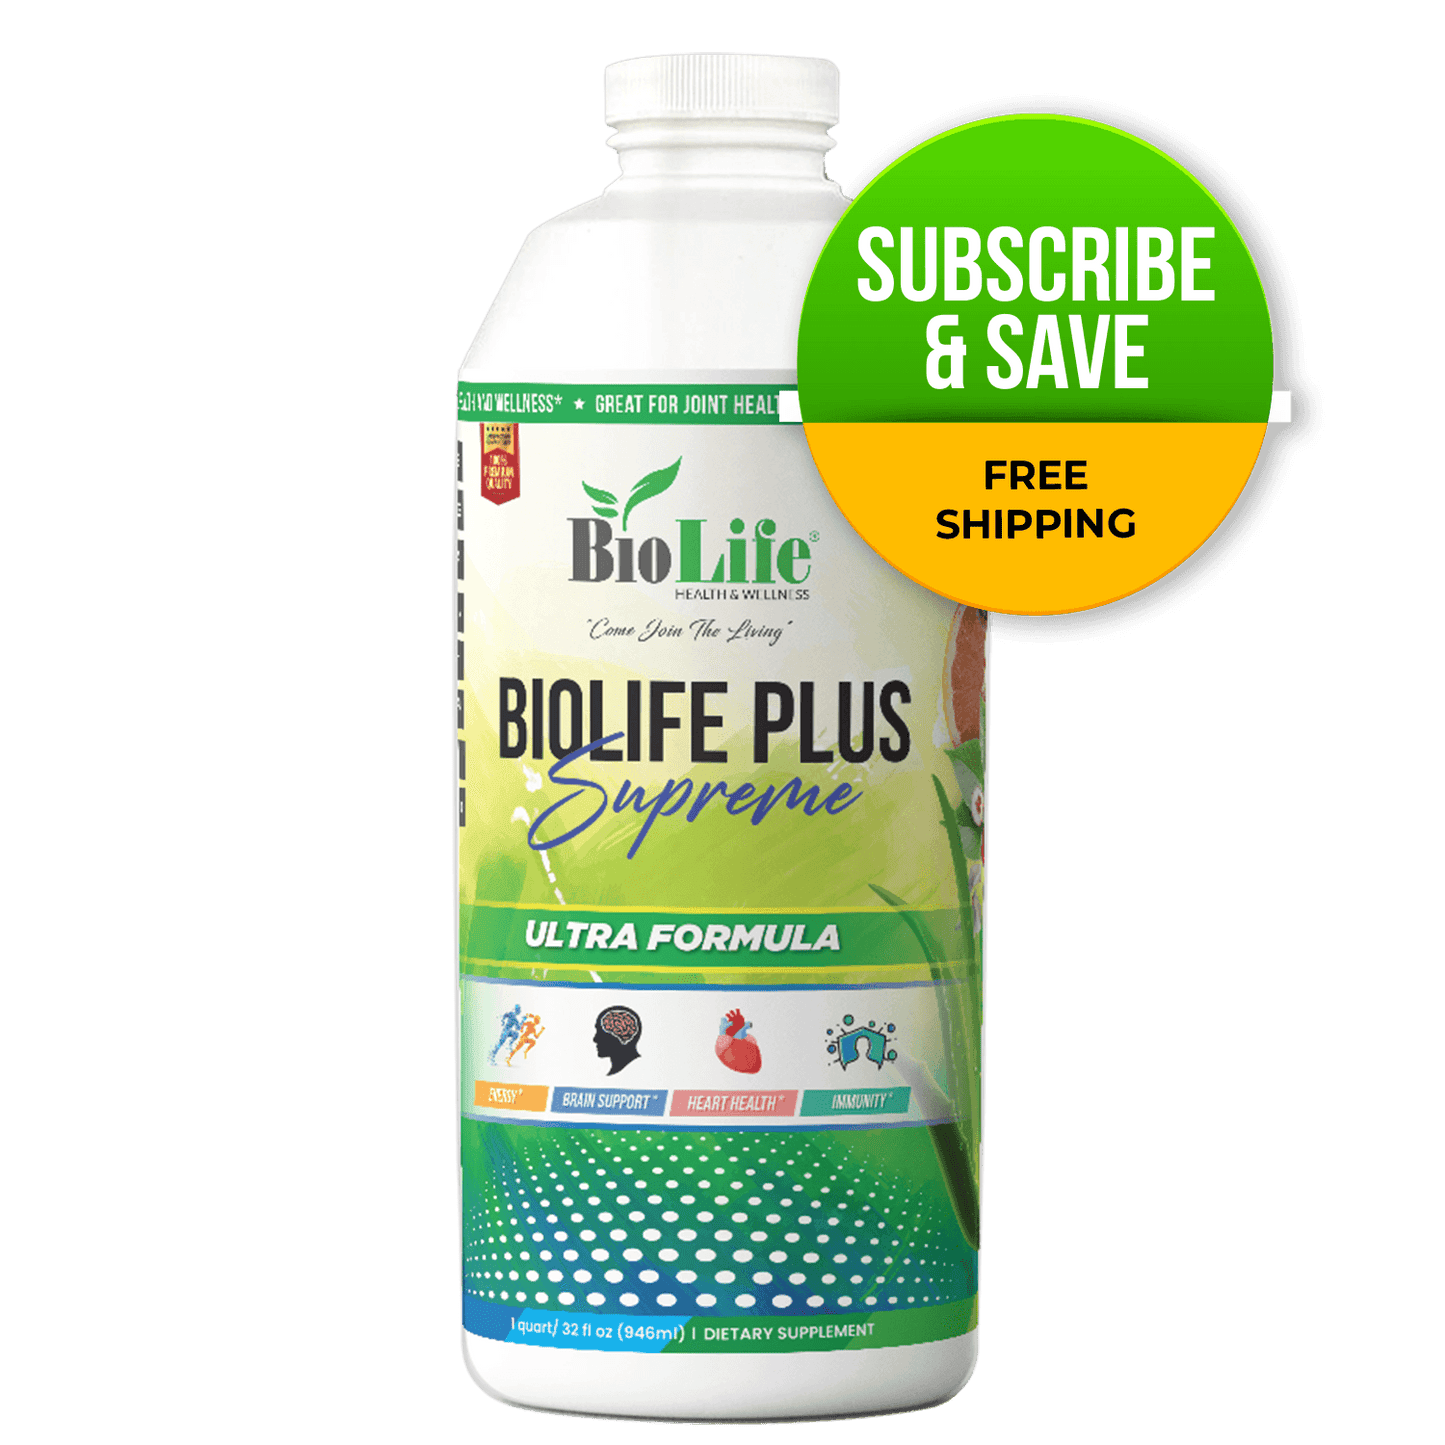 Subscribe & Save! Biolife Plus Supreme - Biolife